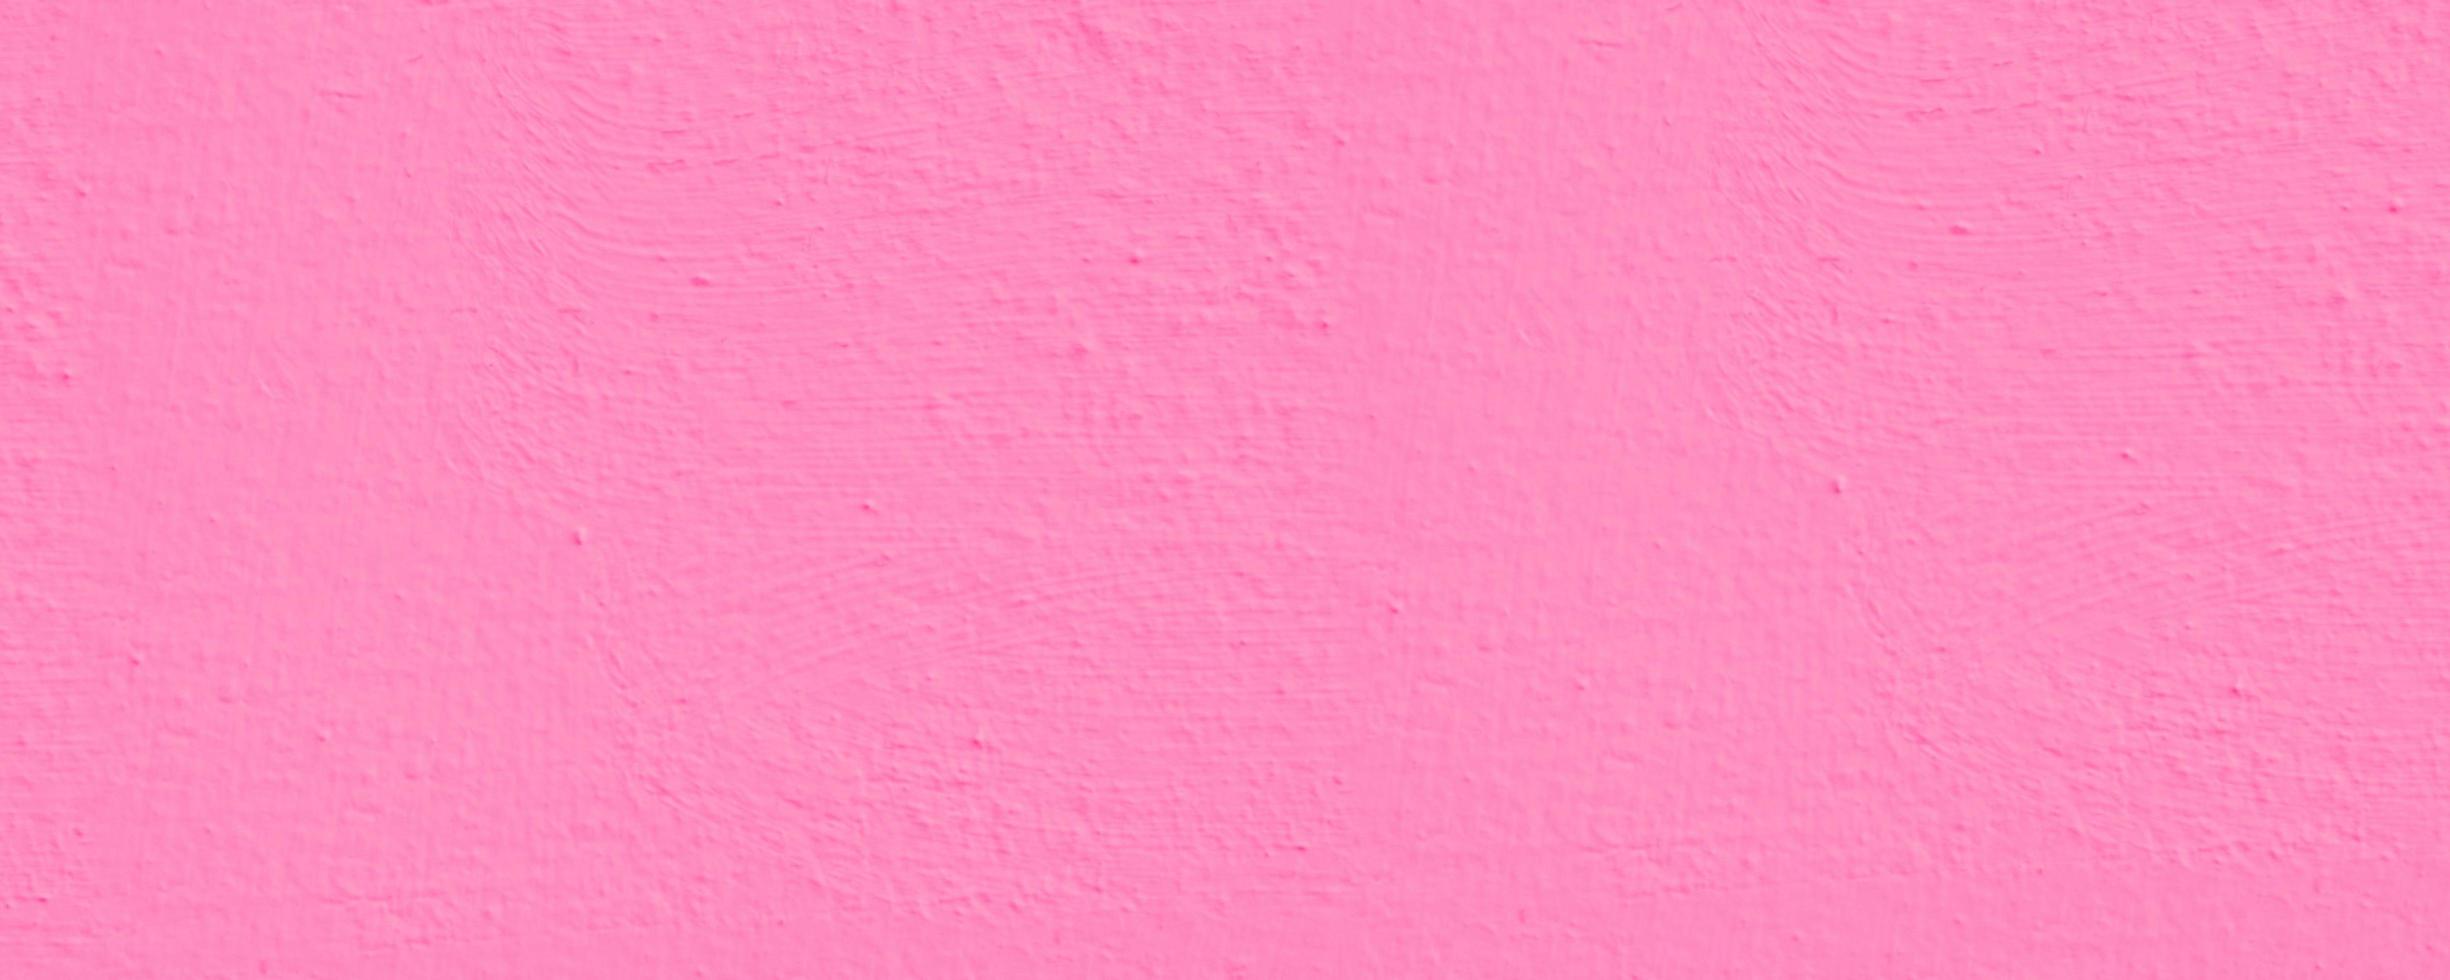 rosa emulsion vägg måla textur rektangel bakgrund foto